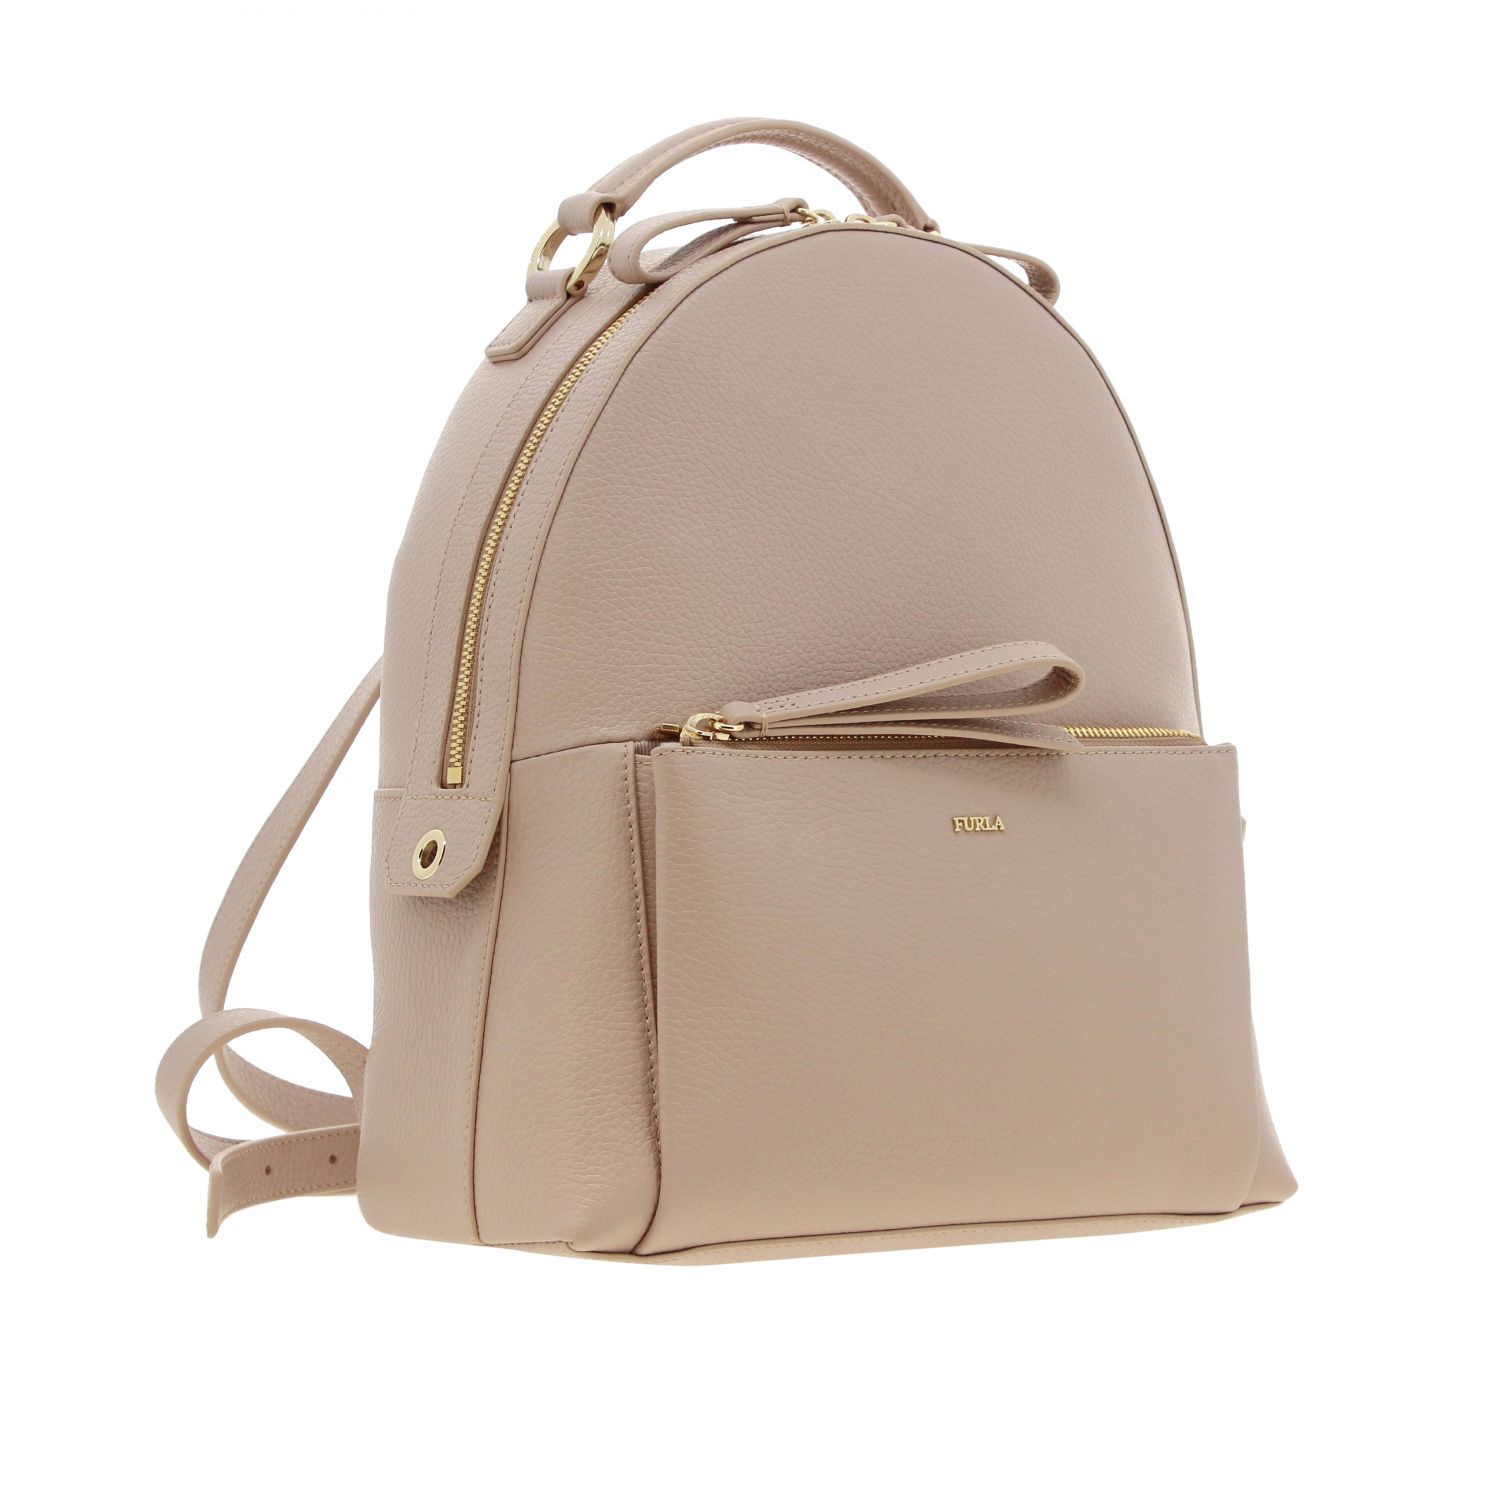 Furla Outlet: backpack for woman - Natural | Furla backpack 1043169 ...